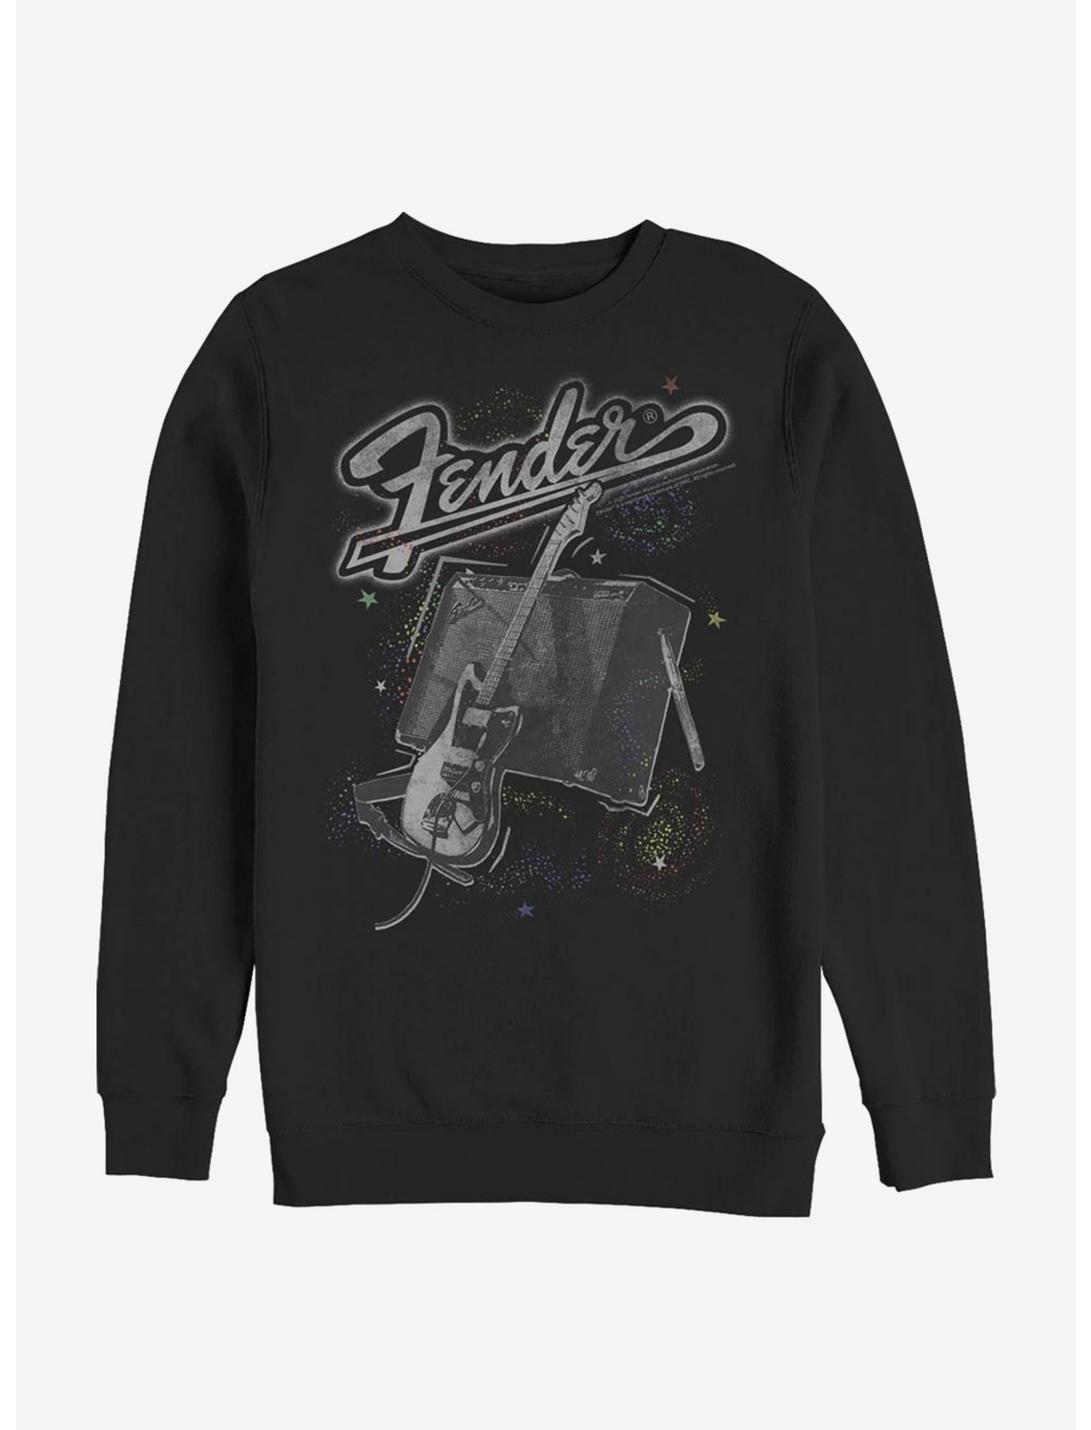 Fender Space Fender Sweatshirt, BLACK, hi-res